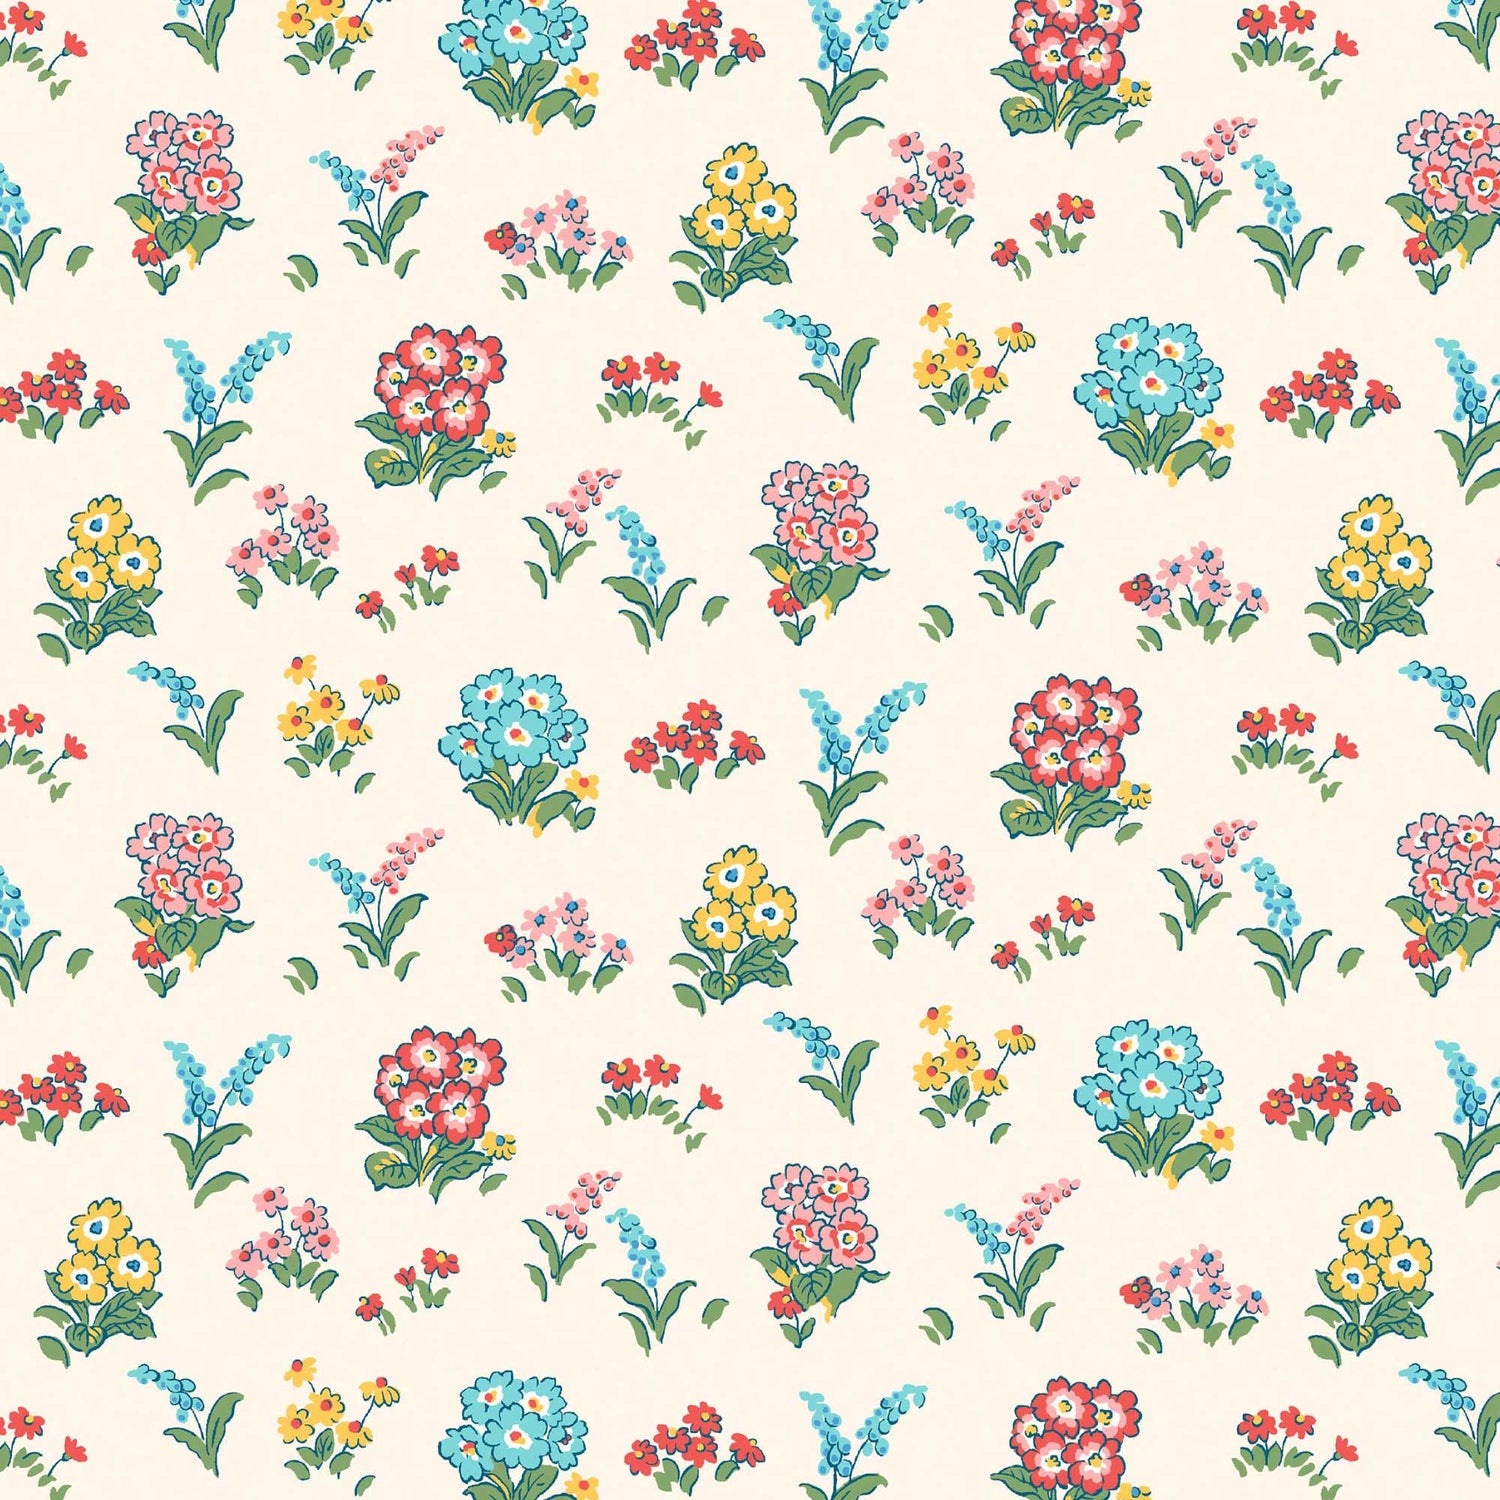 Kensington Garden 5963A - Flower Show Midsummer - Liberty Quilting Cotton